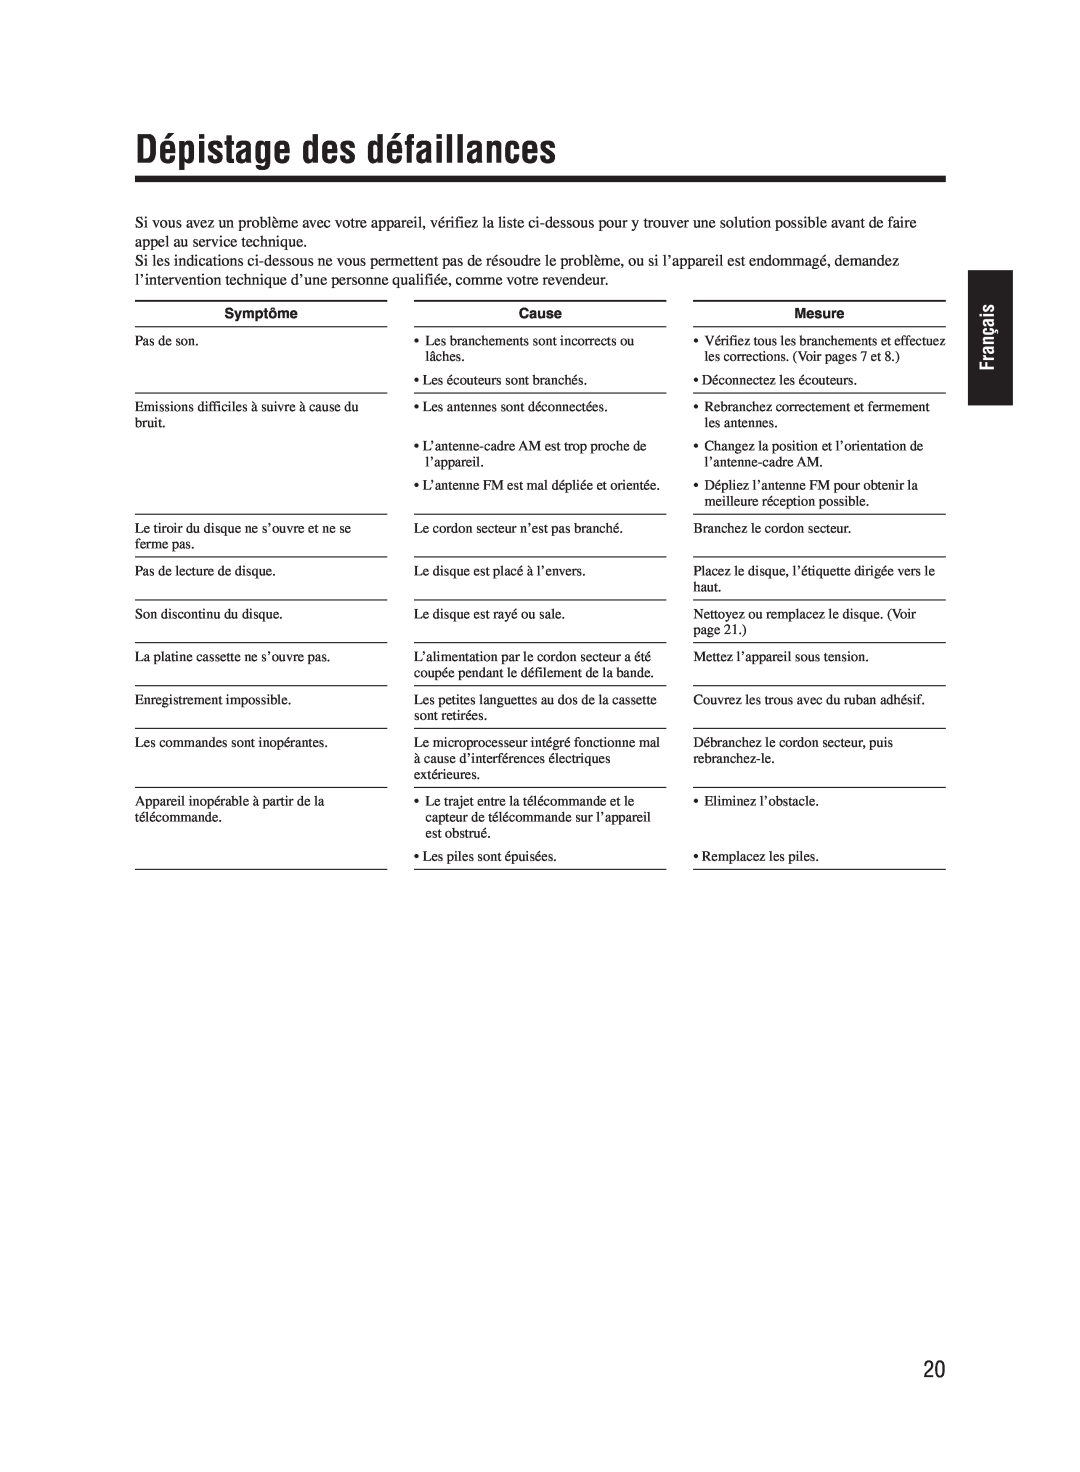 JVC UX-M55 manual Dépistage des défaillances, Français, Symptôme, Cause, Mesure 